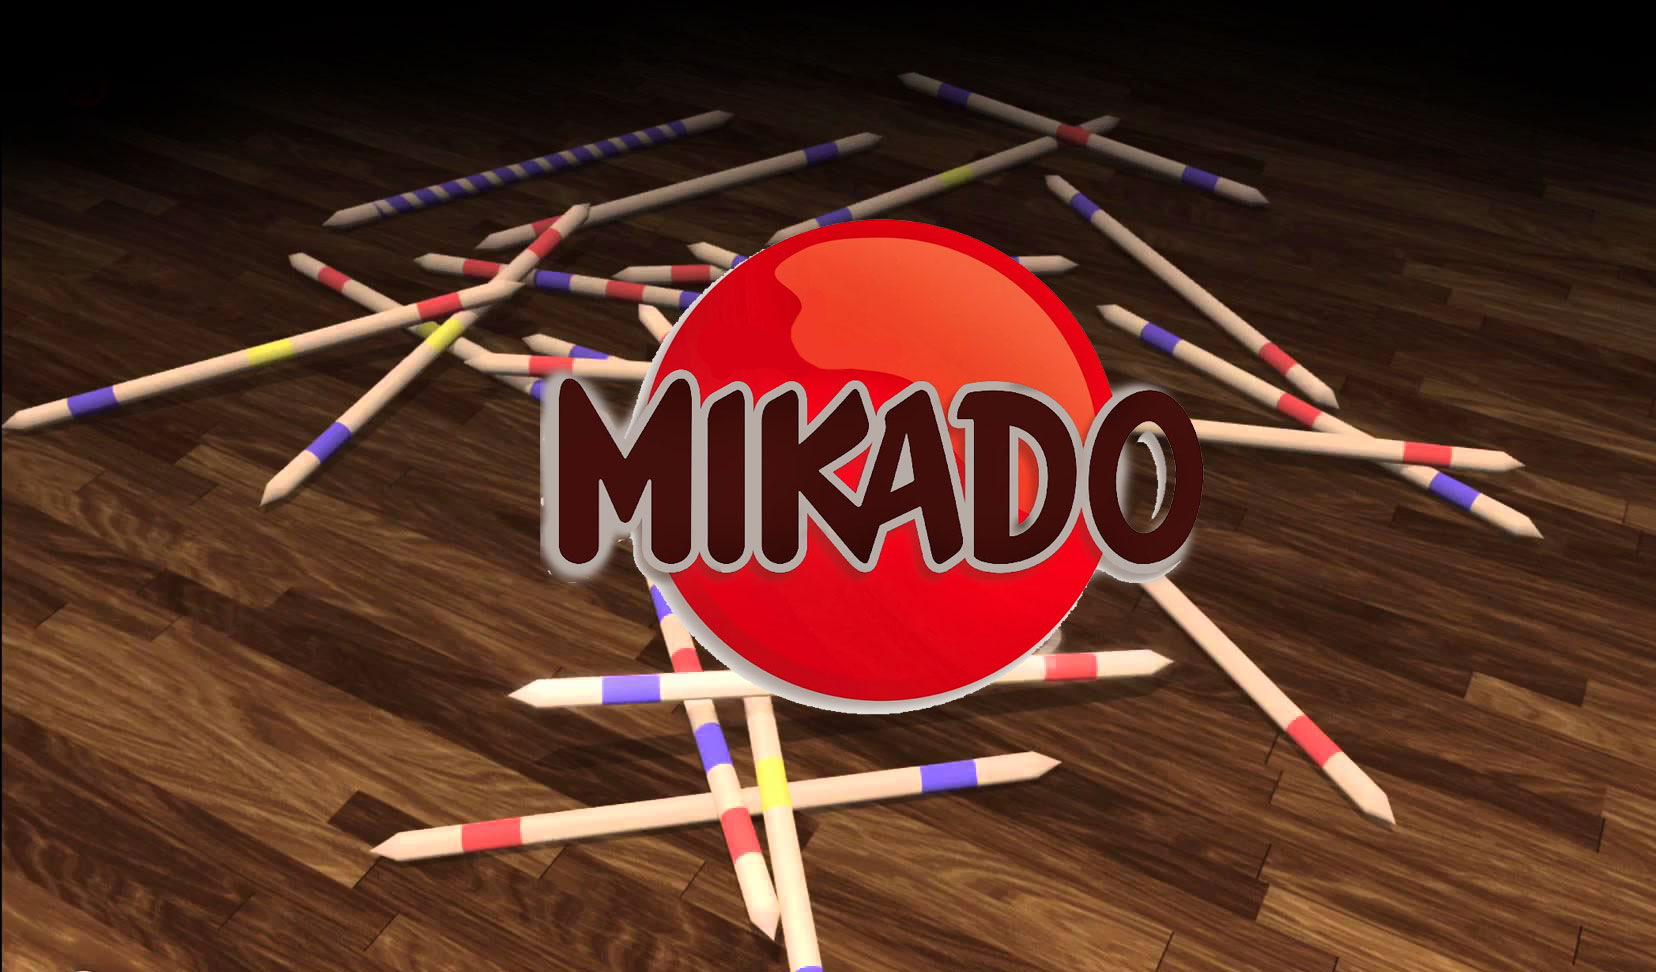 دانلود بازی Mikado v1.1.3 برای آيفون ، آيپد و آيپاد لمسی